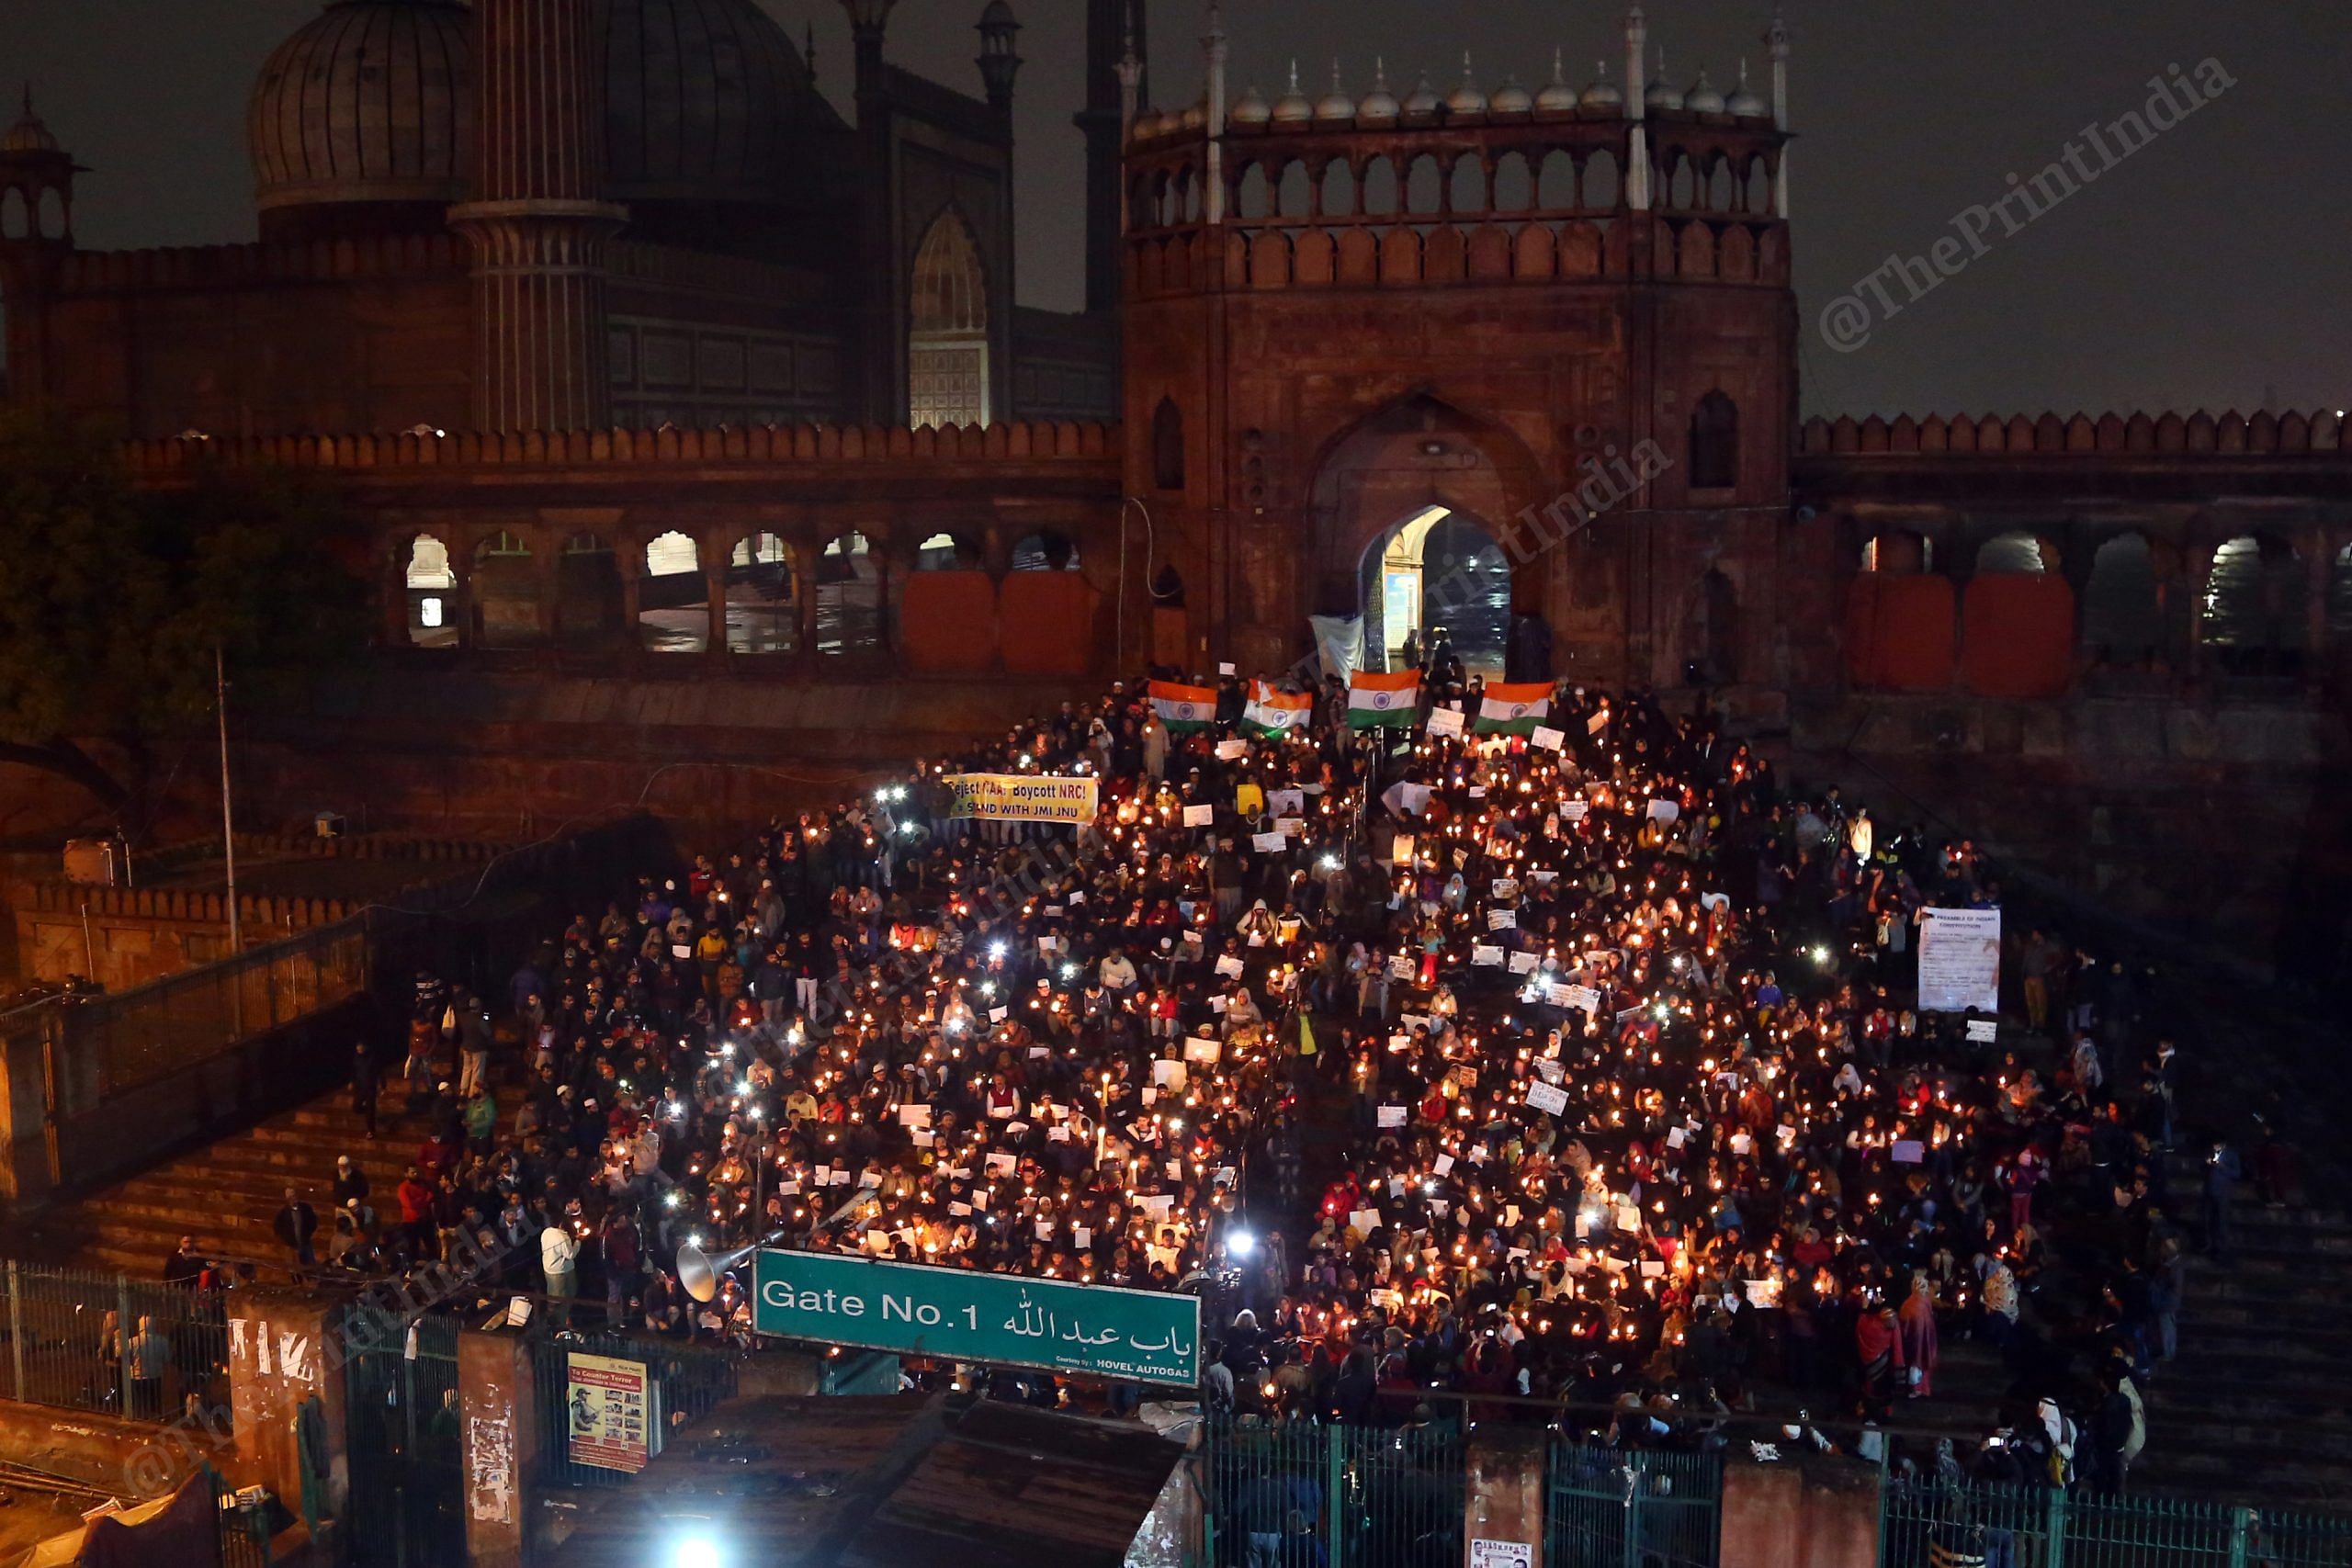 Anti-CAA protestors gathered at Jama Masjid with candles | Photo: Suraj Singh Bisht | ThePrint